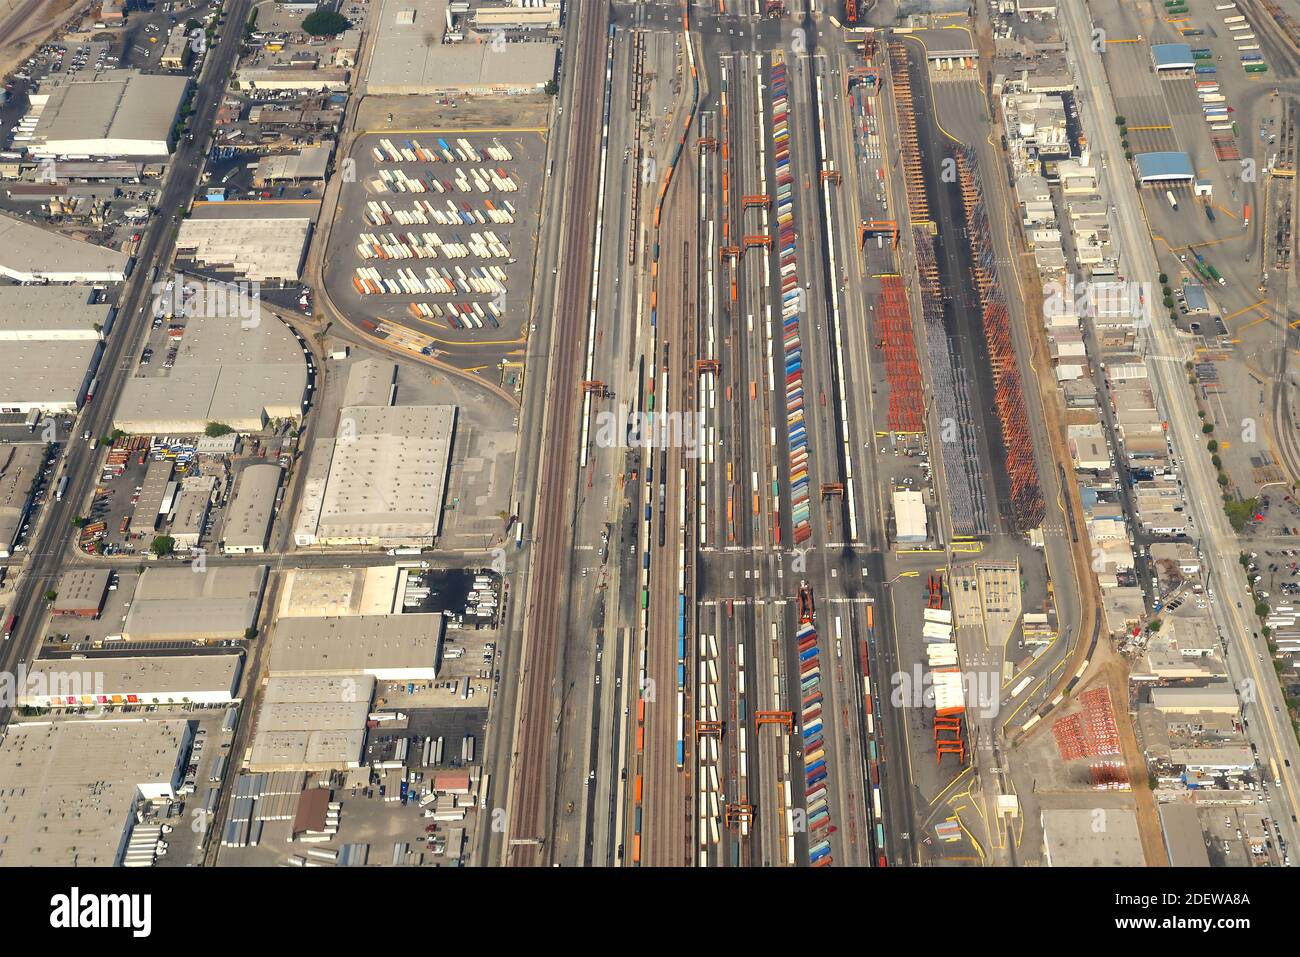 BNSF Railway Company operazioni di carico intermodali a Los Angeles, USA. Vista aerea della struttura di trasporto merci con più contenitori. Foto Stock